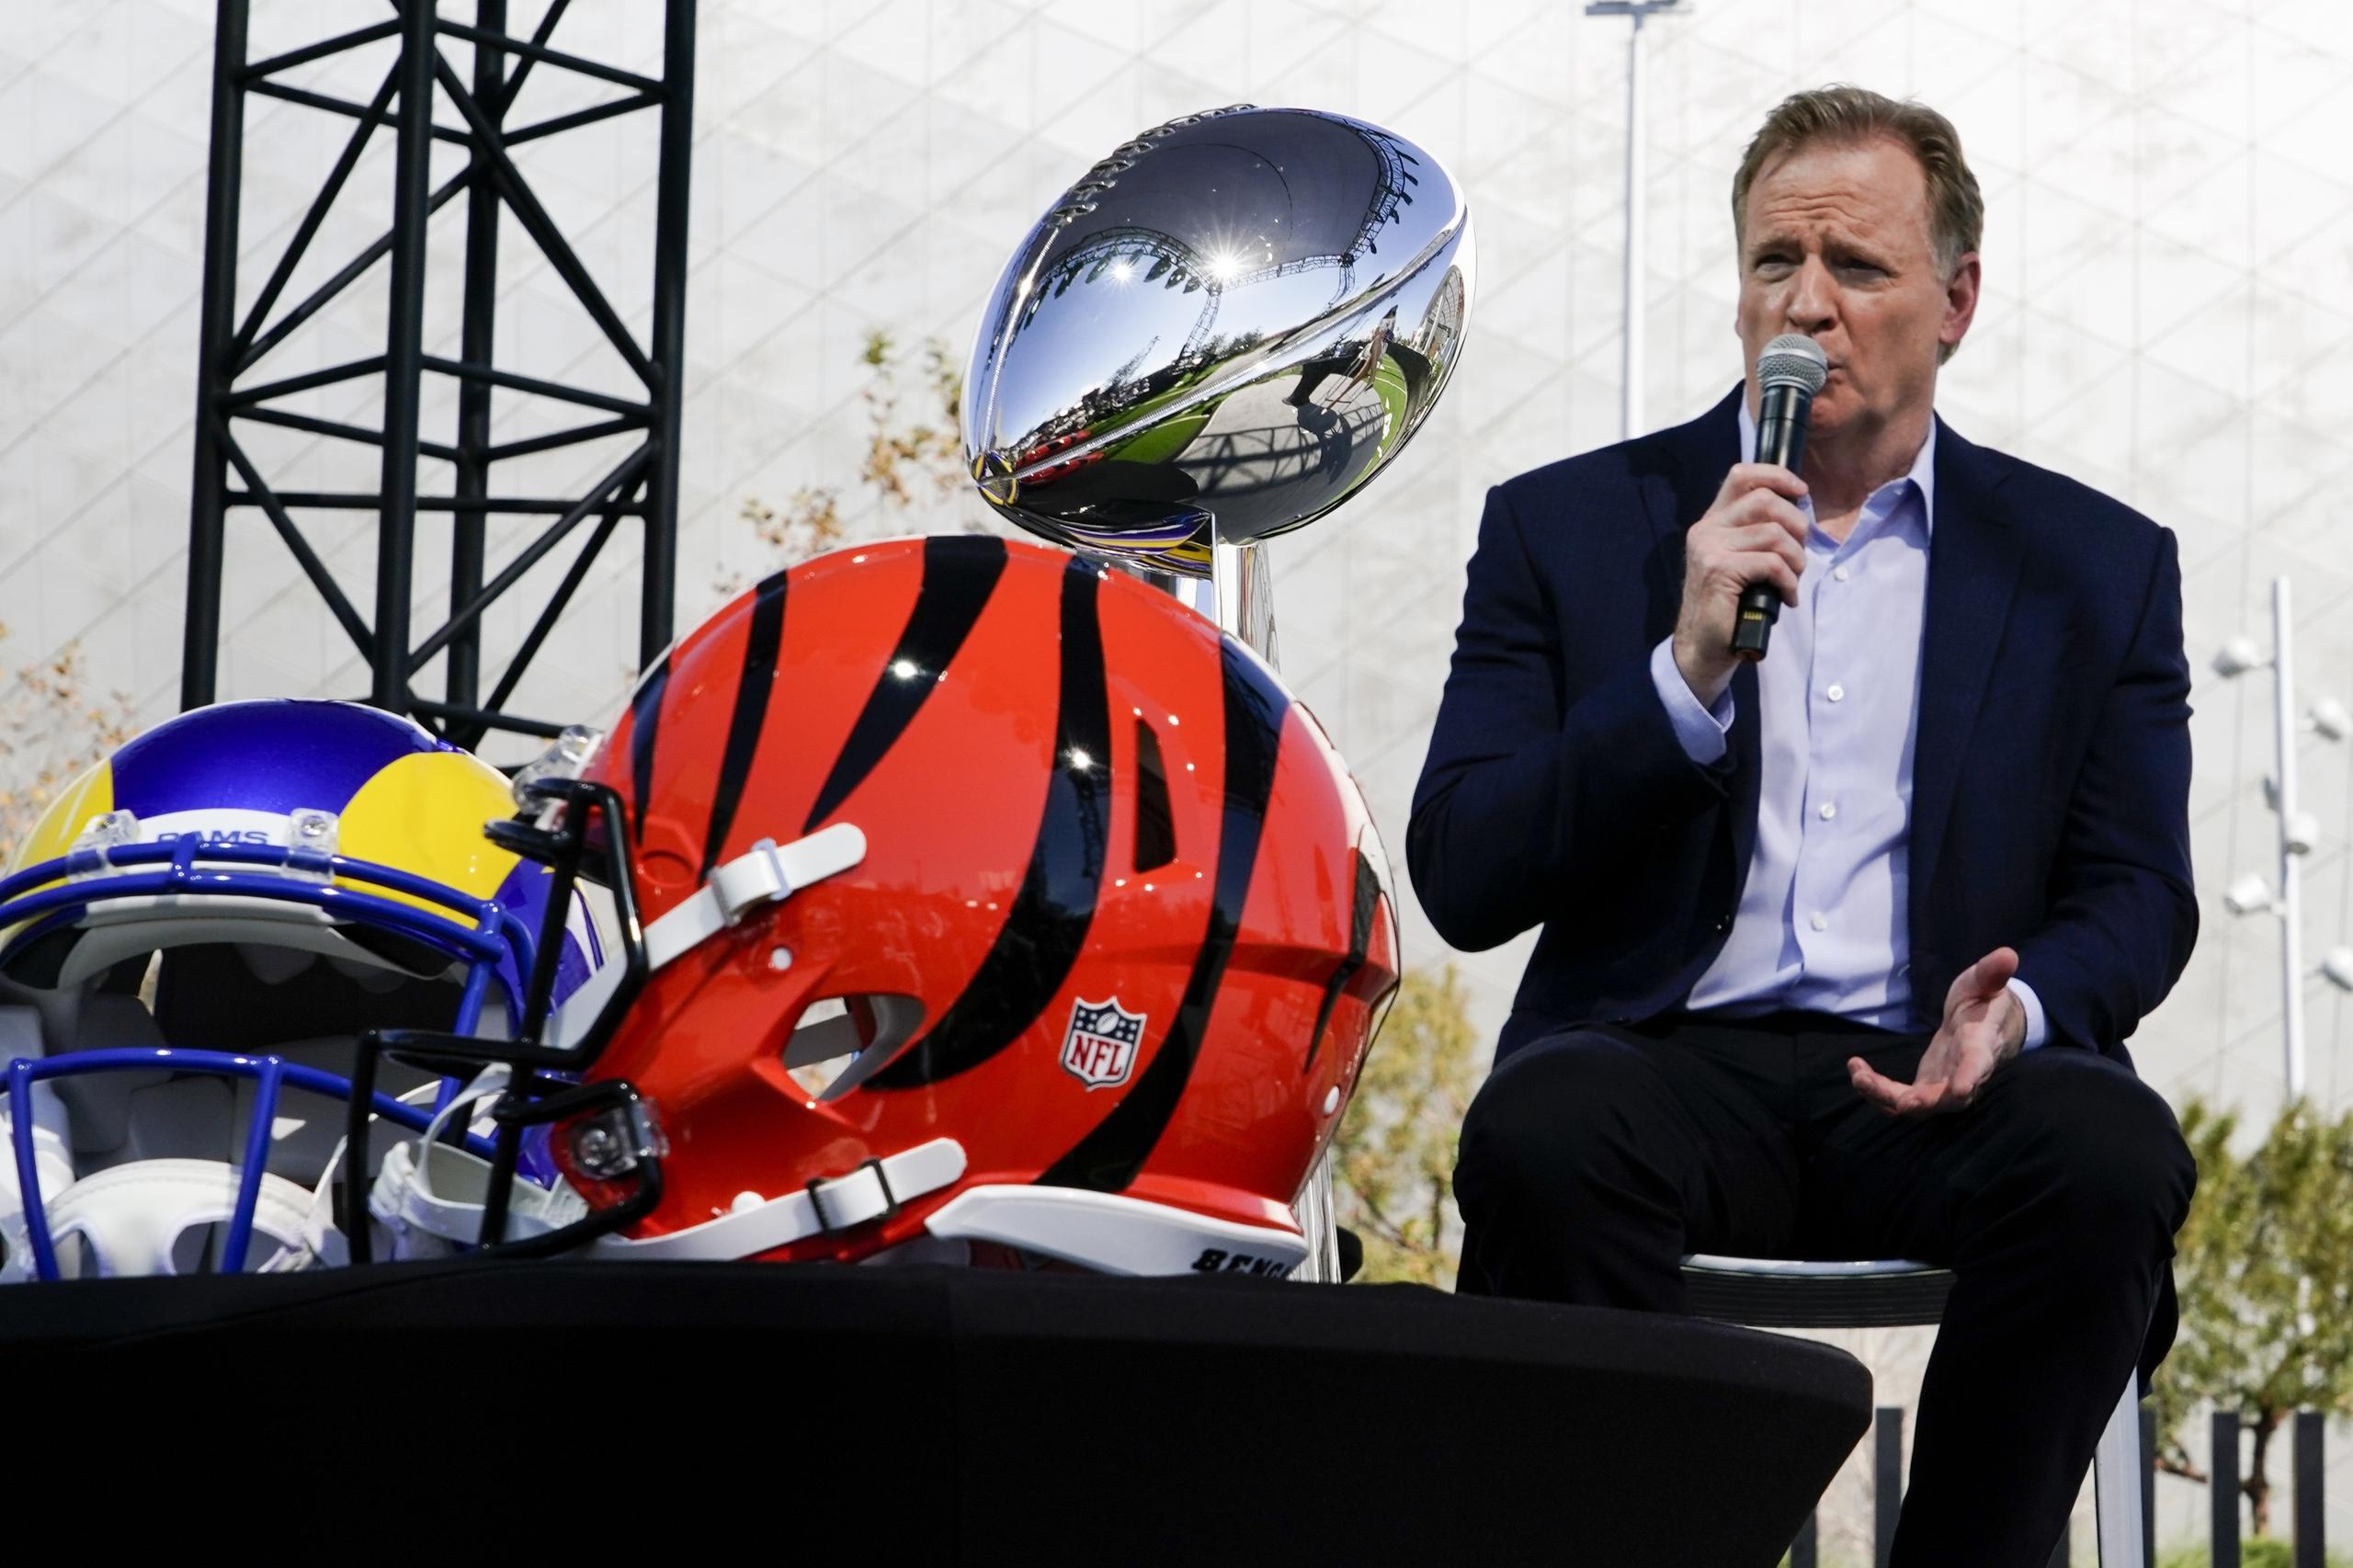 El comisionado de la NFL Roger Goodell habla en su conferencia de prensa tradicional en la semana del Super Bowl, el miércoles 9 de febrero de 2022, en Inglewood, Calif. Ahora que pasó el Super Bowl, la NFL no deja de generar noticias, con muchos eventos previos al arranque de la temporada 2022.